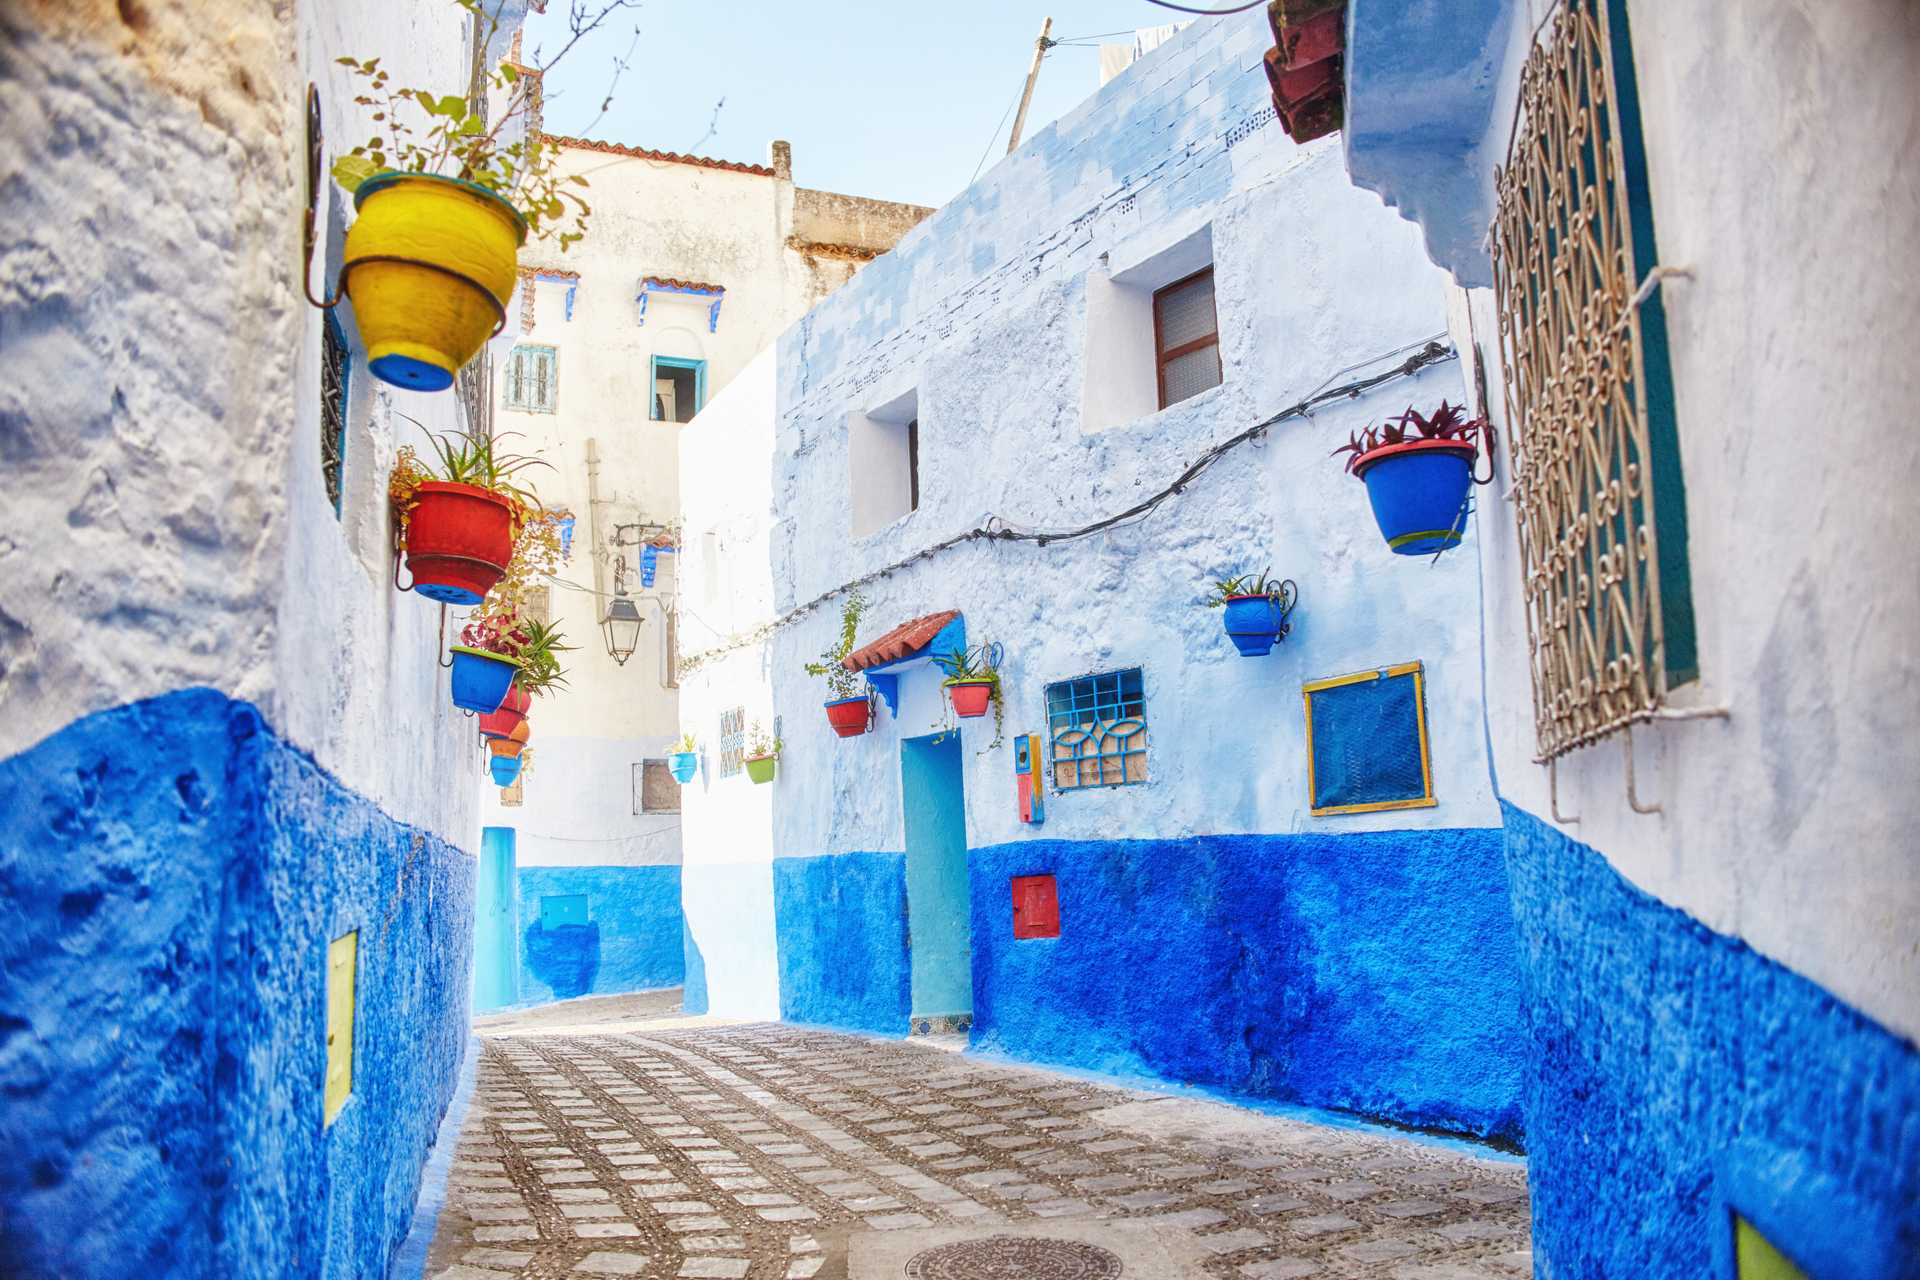 Marakeš ( Maroko ), tip na trip, tip na nejlevnější letenka | Lowkosťák